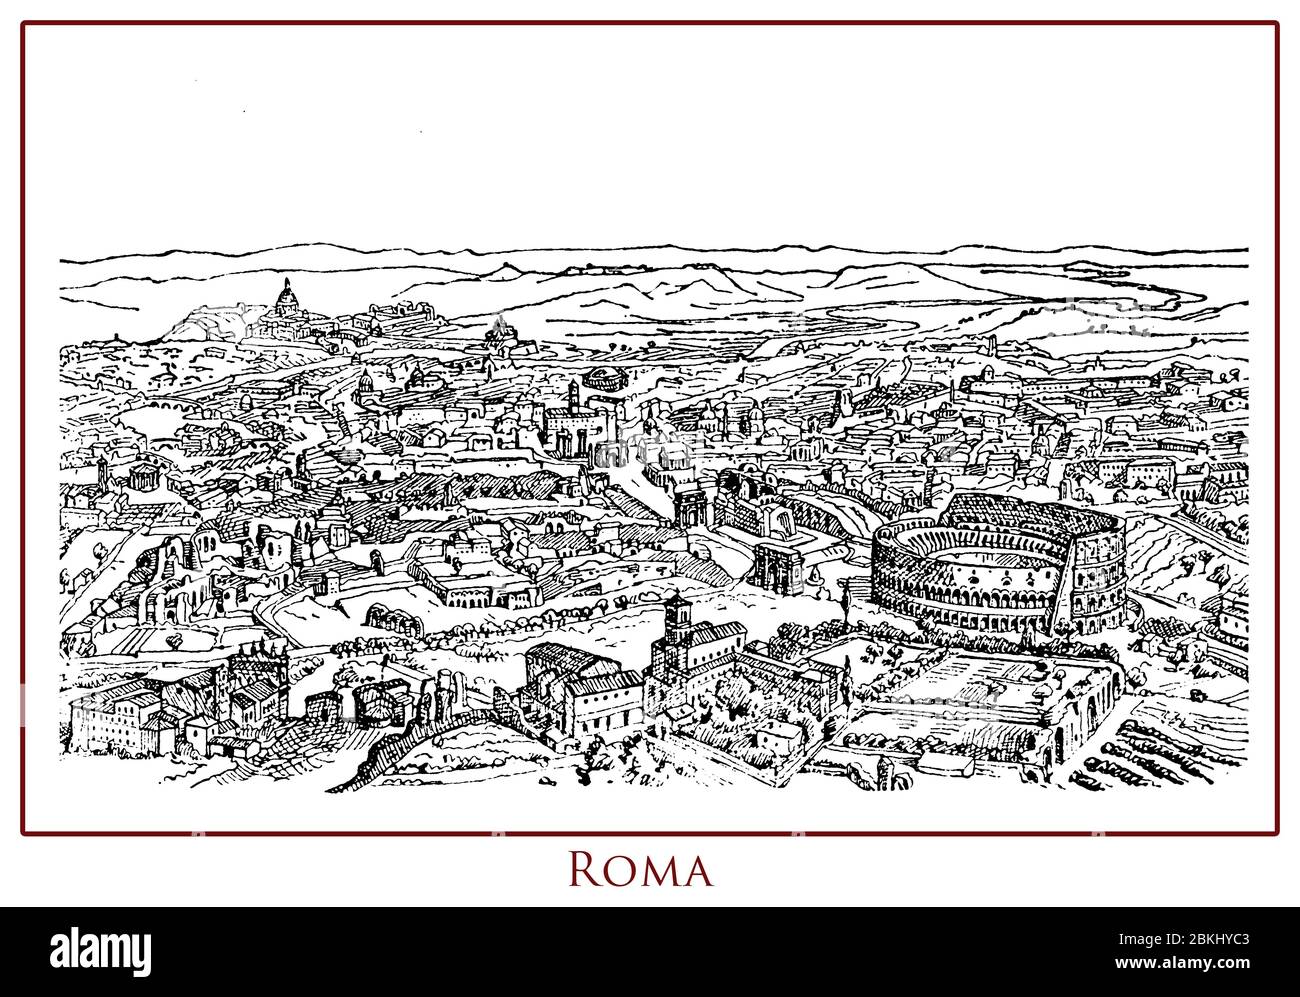 Tavolo illustrato d'epoca con vista panoramica sulla città di Roma capitale d'Italia, situato sulle rive del Tevere, ricco di storia, architettura, arte e monumenti antichi come il Colosseo Foto Stock